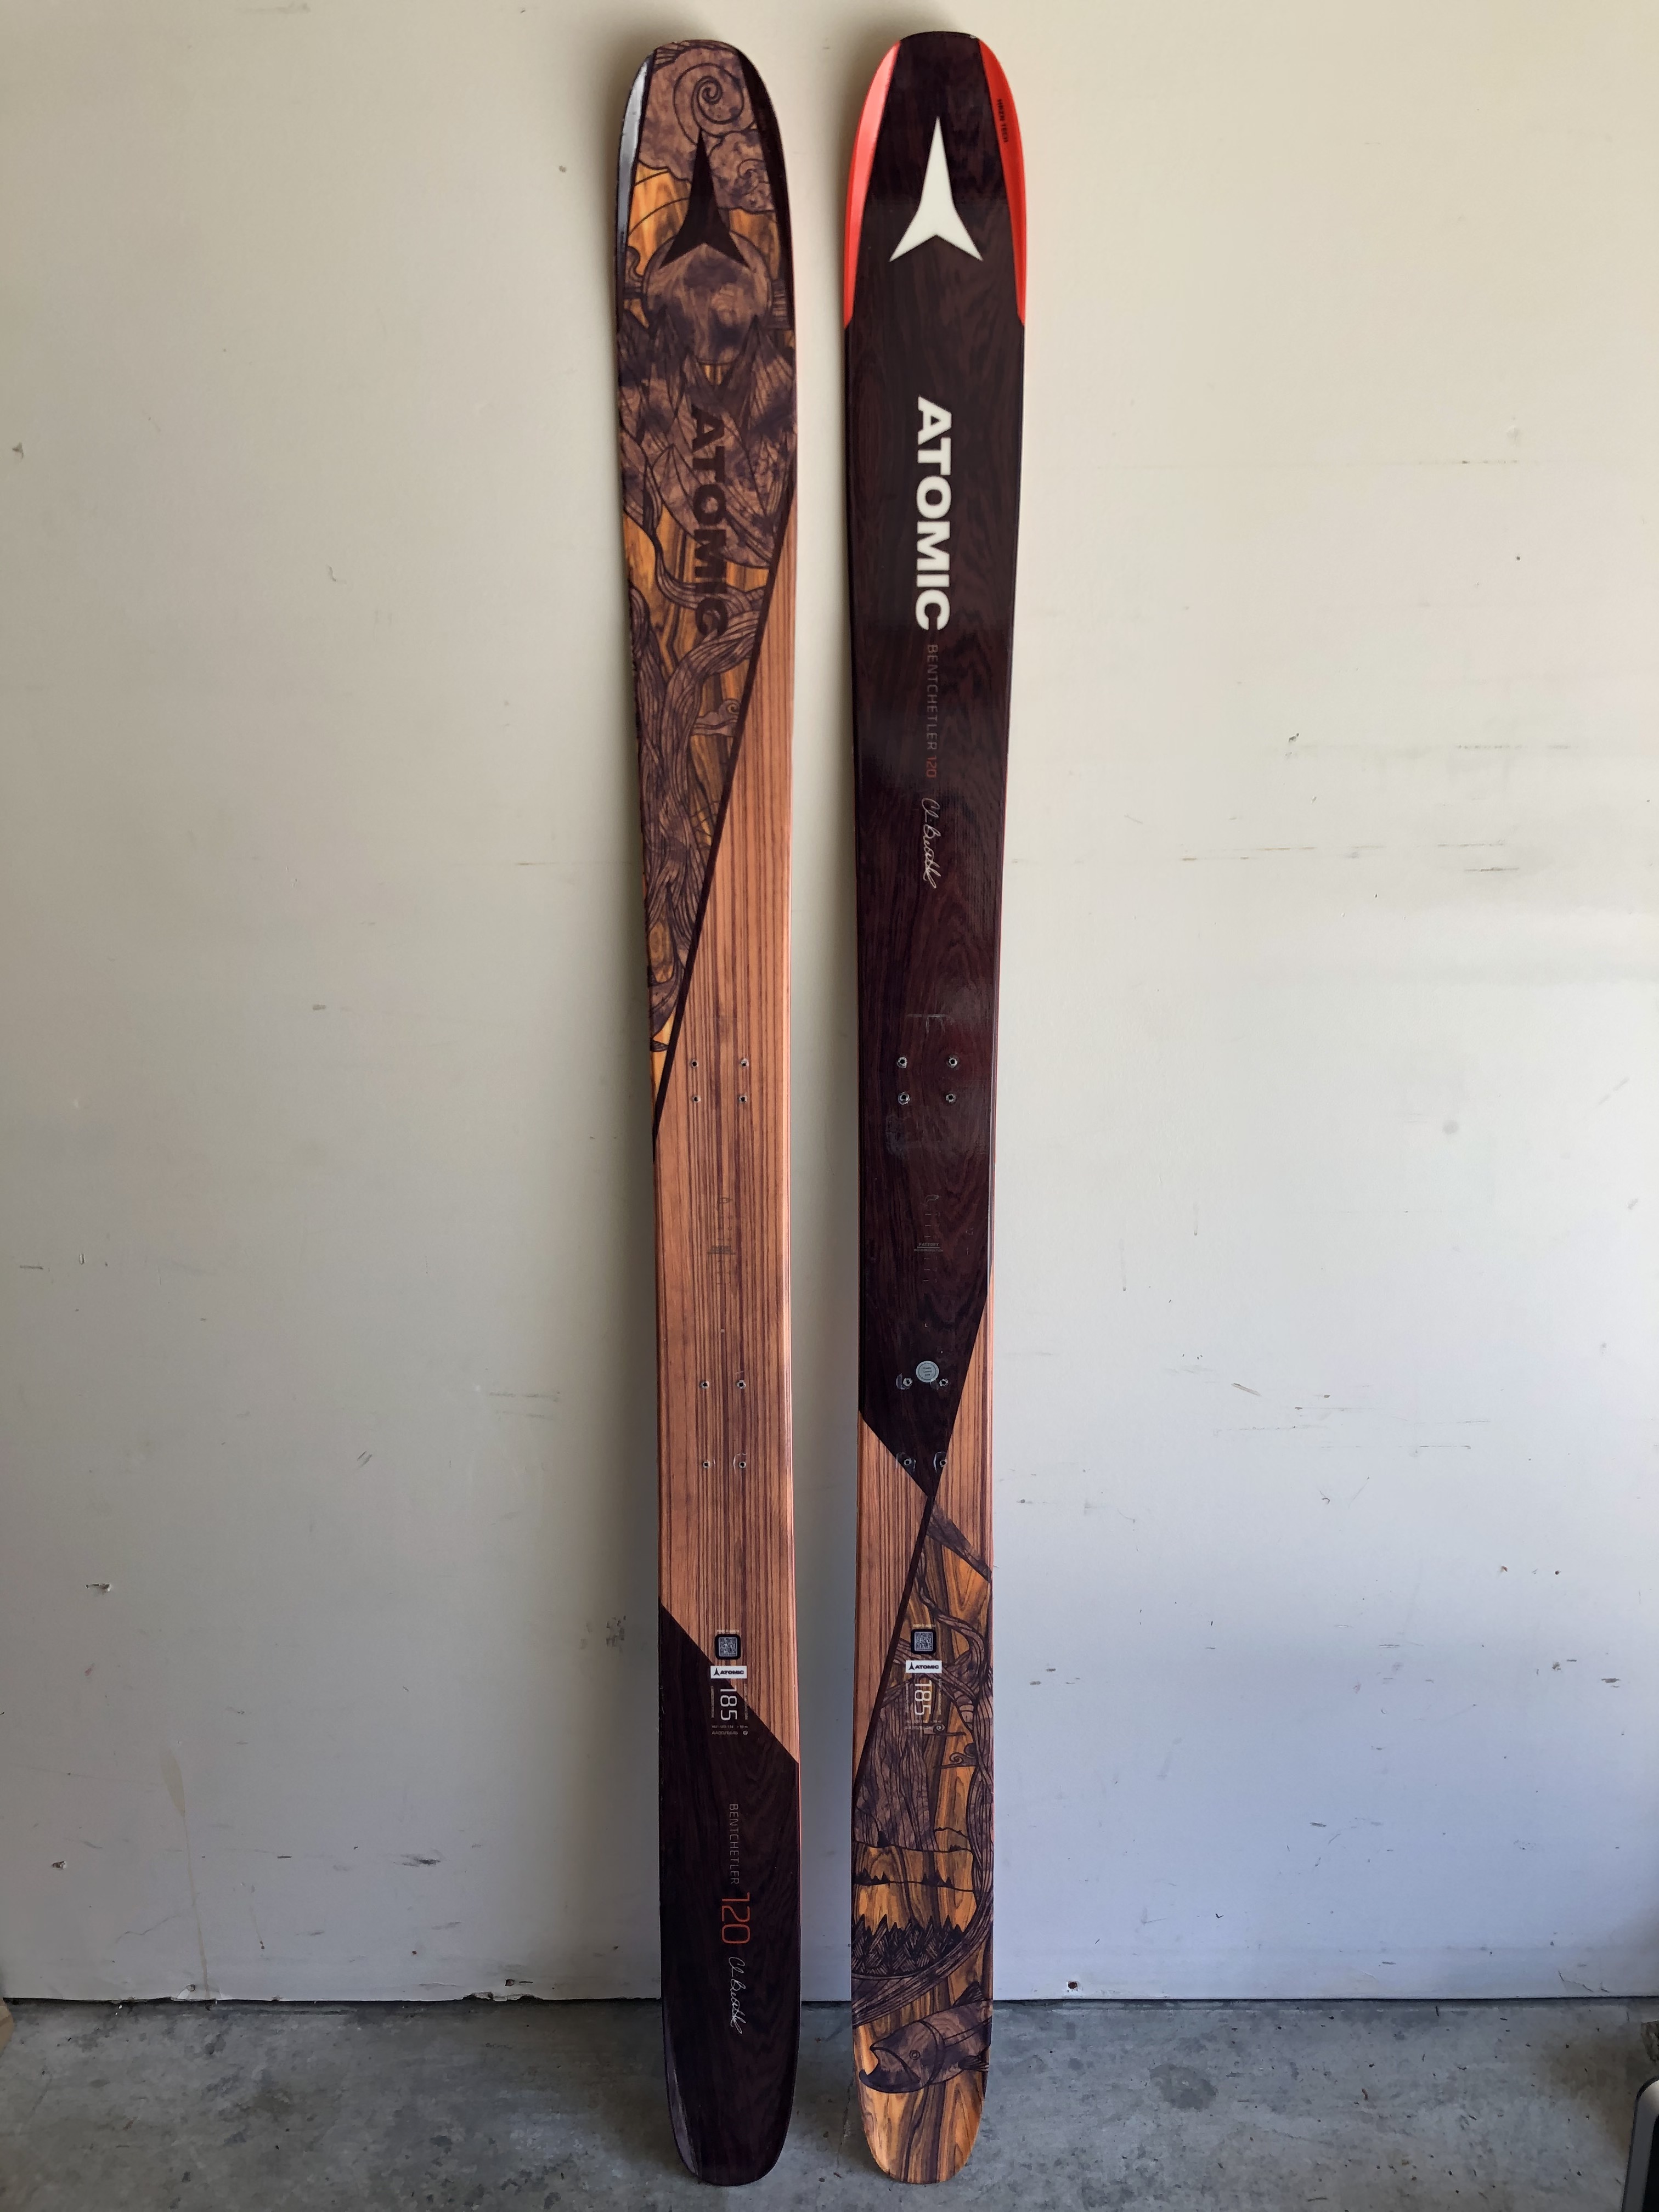 アトミック ベンチェトラー185cm - スキー